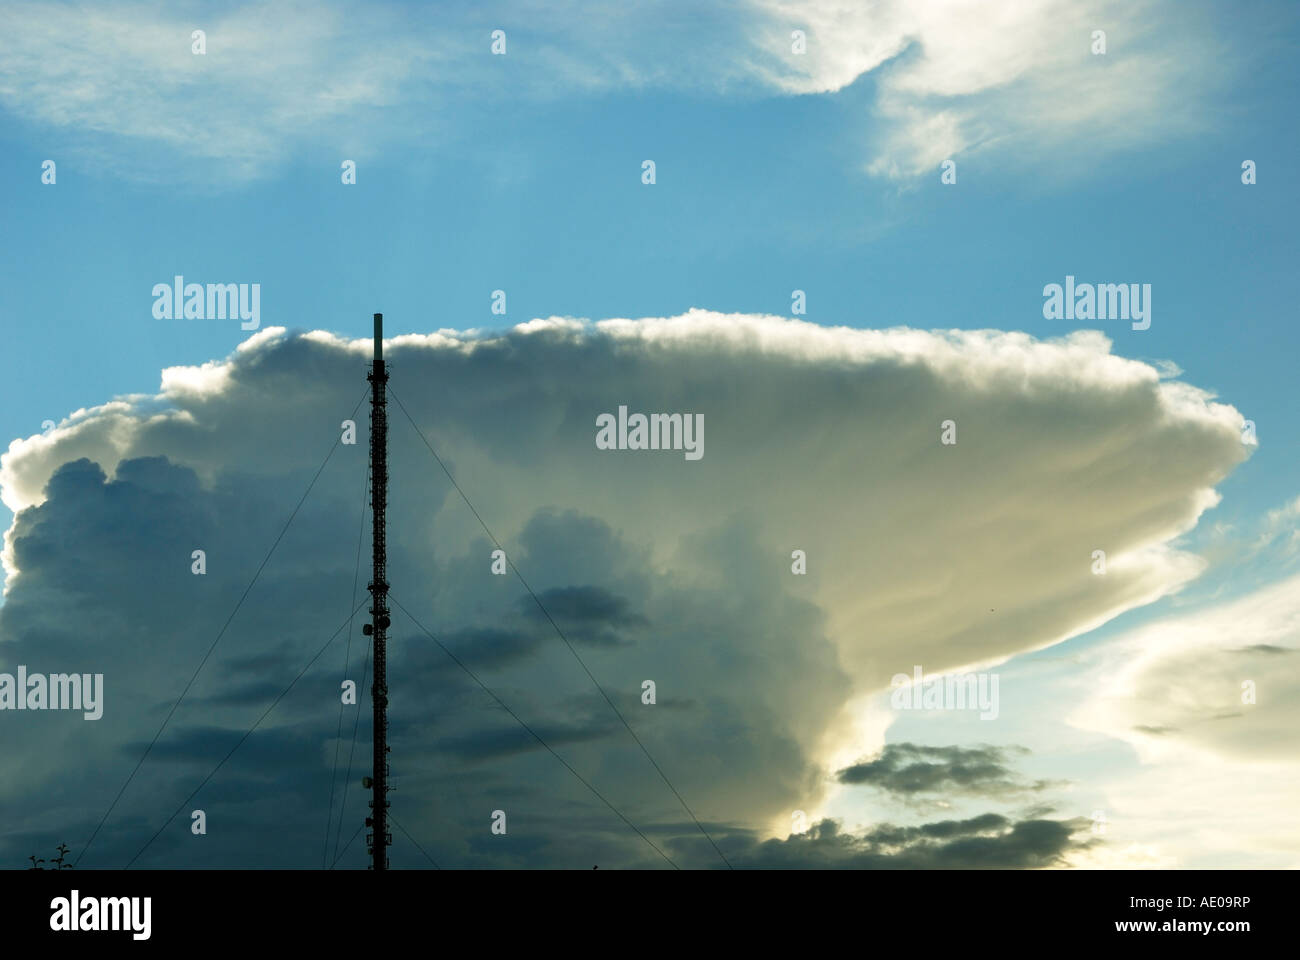 Blaenplwyf plat mât avec les nuages de tempête derrière Banque D'Images